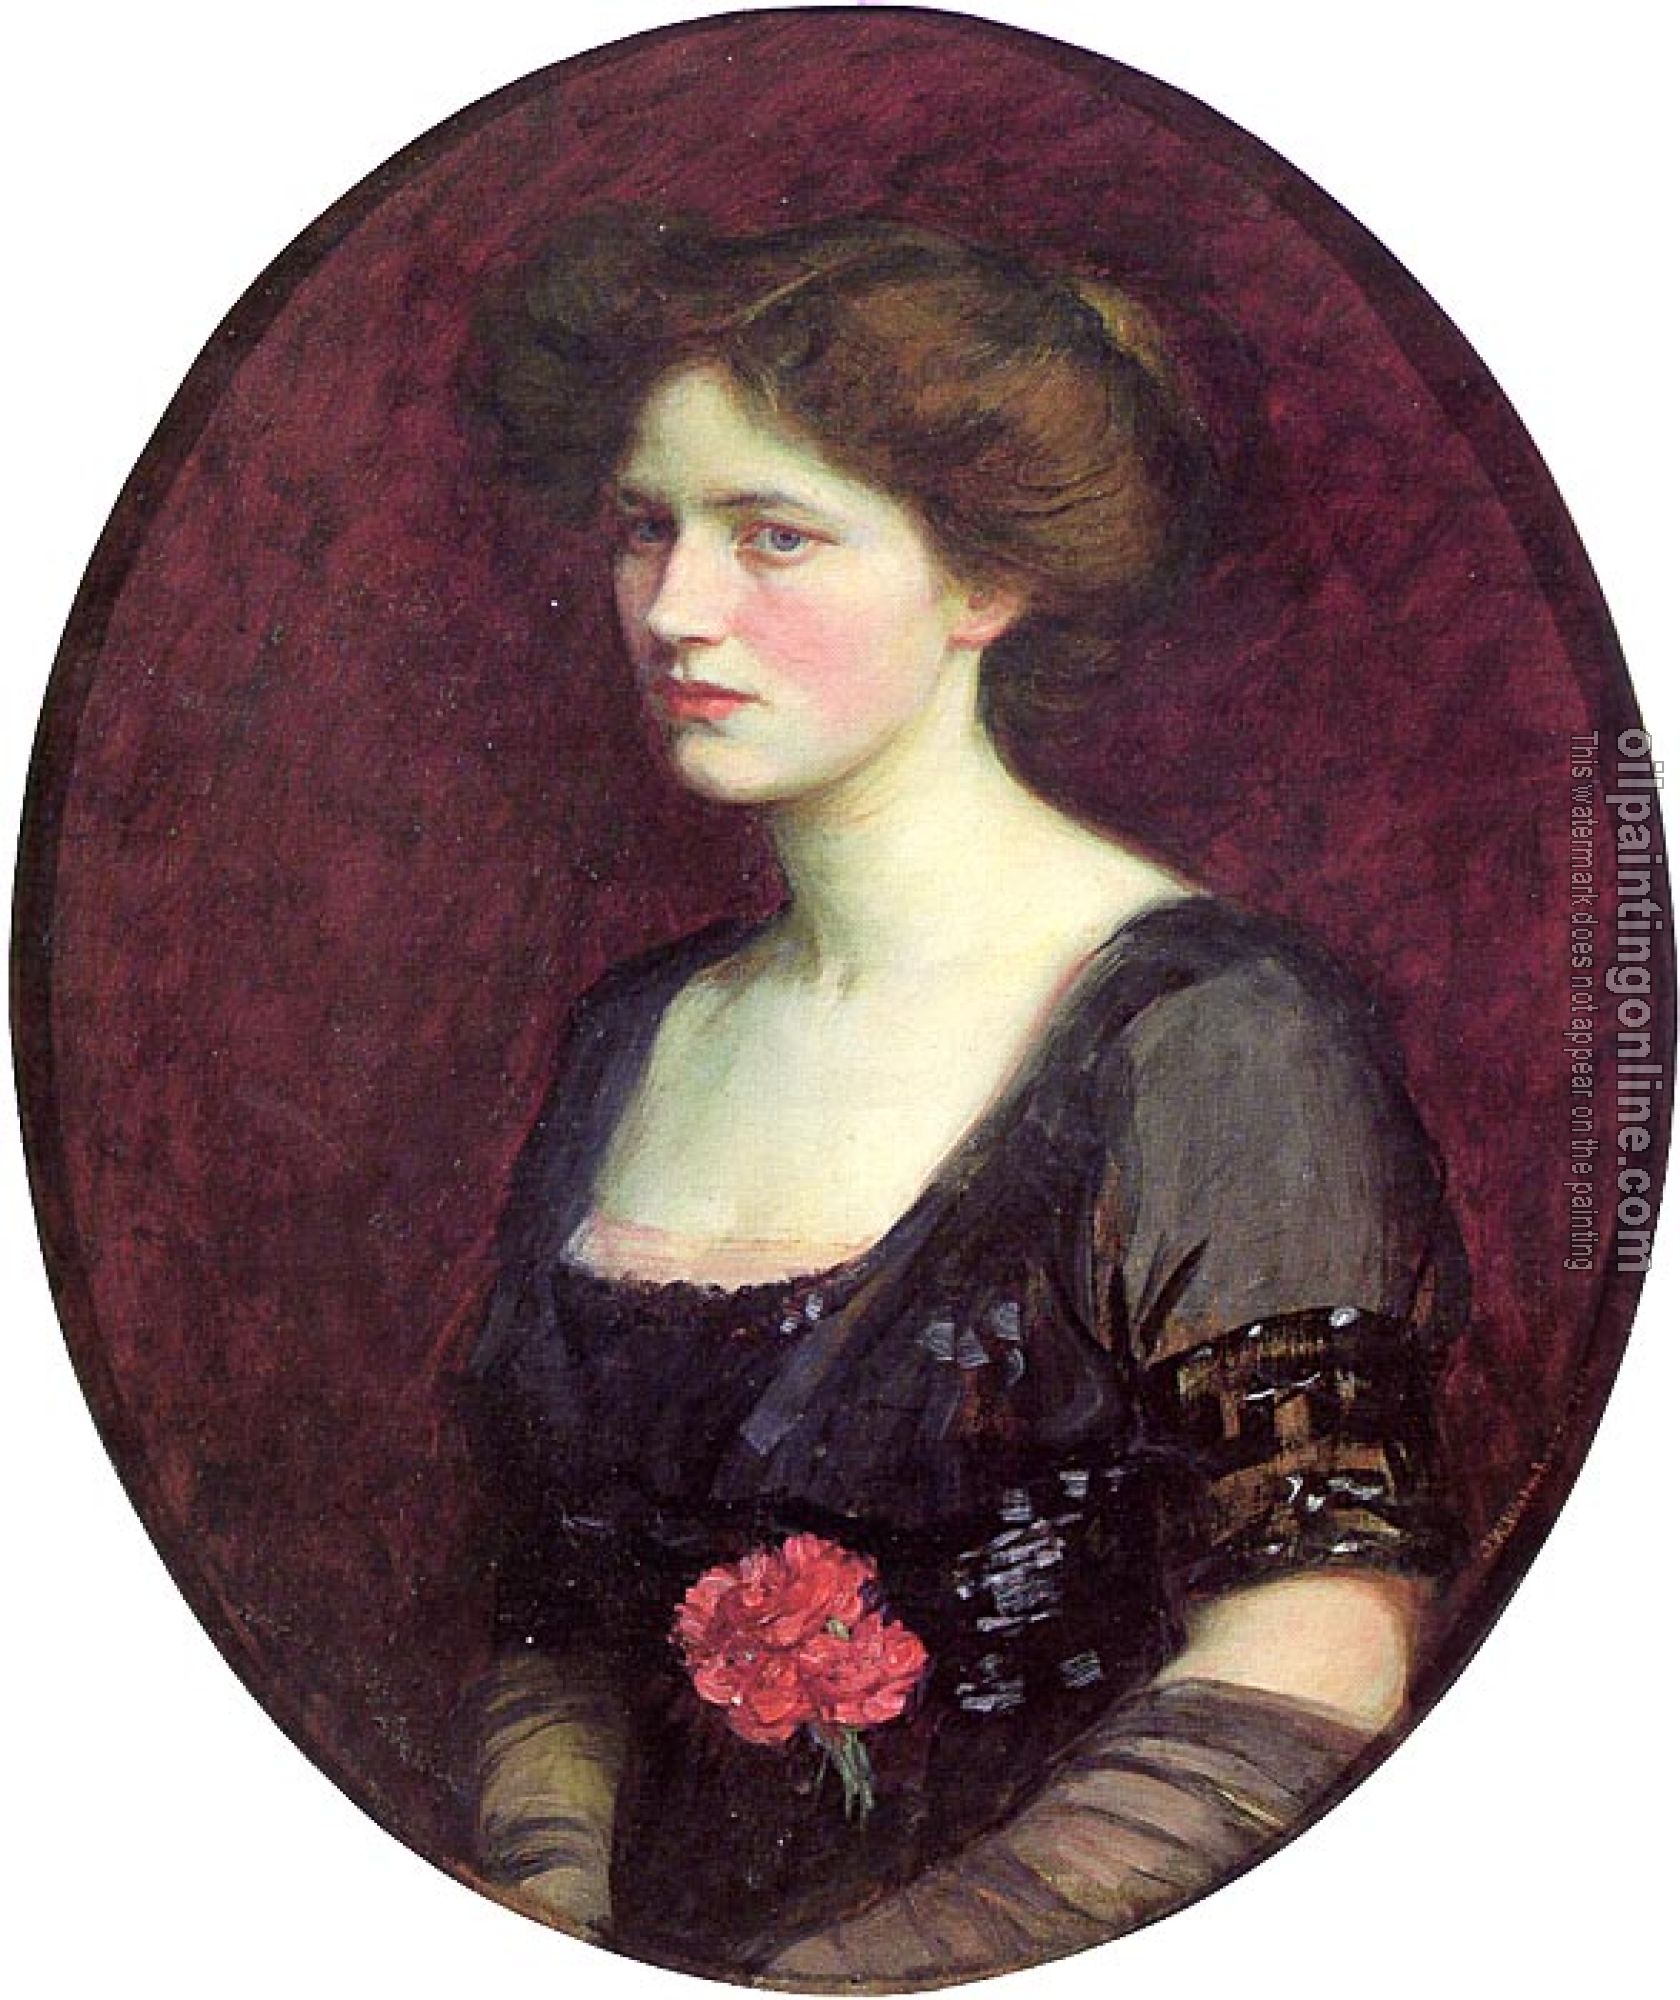 Waterhouse, John William - Portrait of Mrs Charles Schreiber